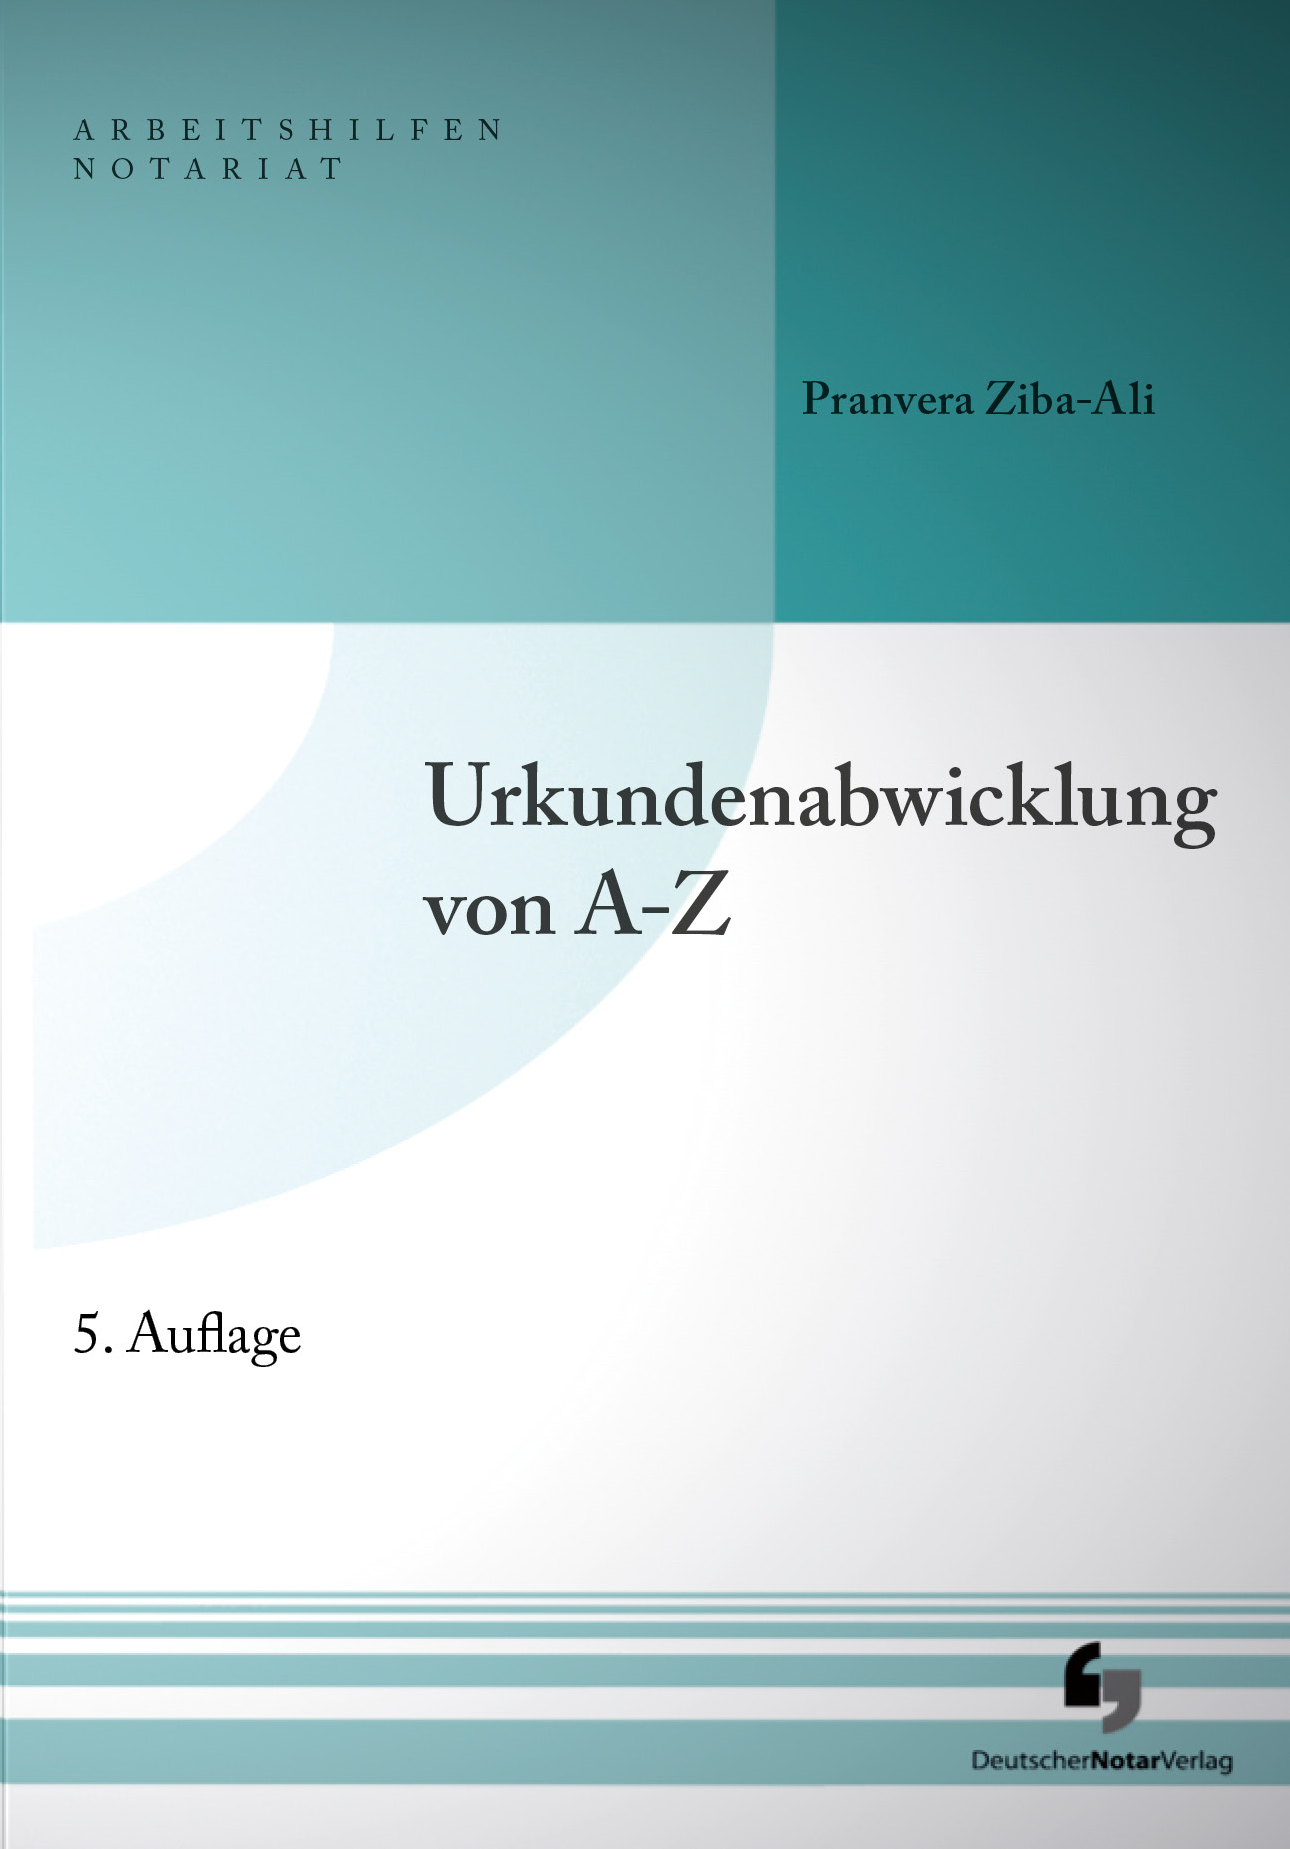 Abbildung: Urkundenabwicklung von A-Z